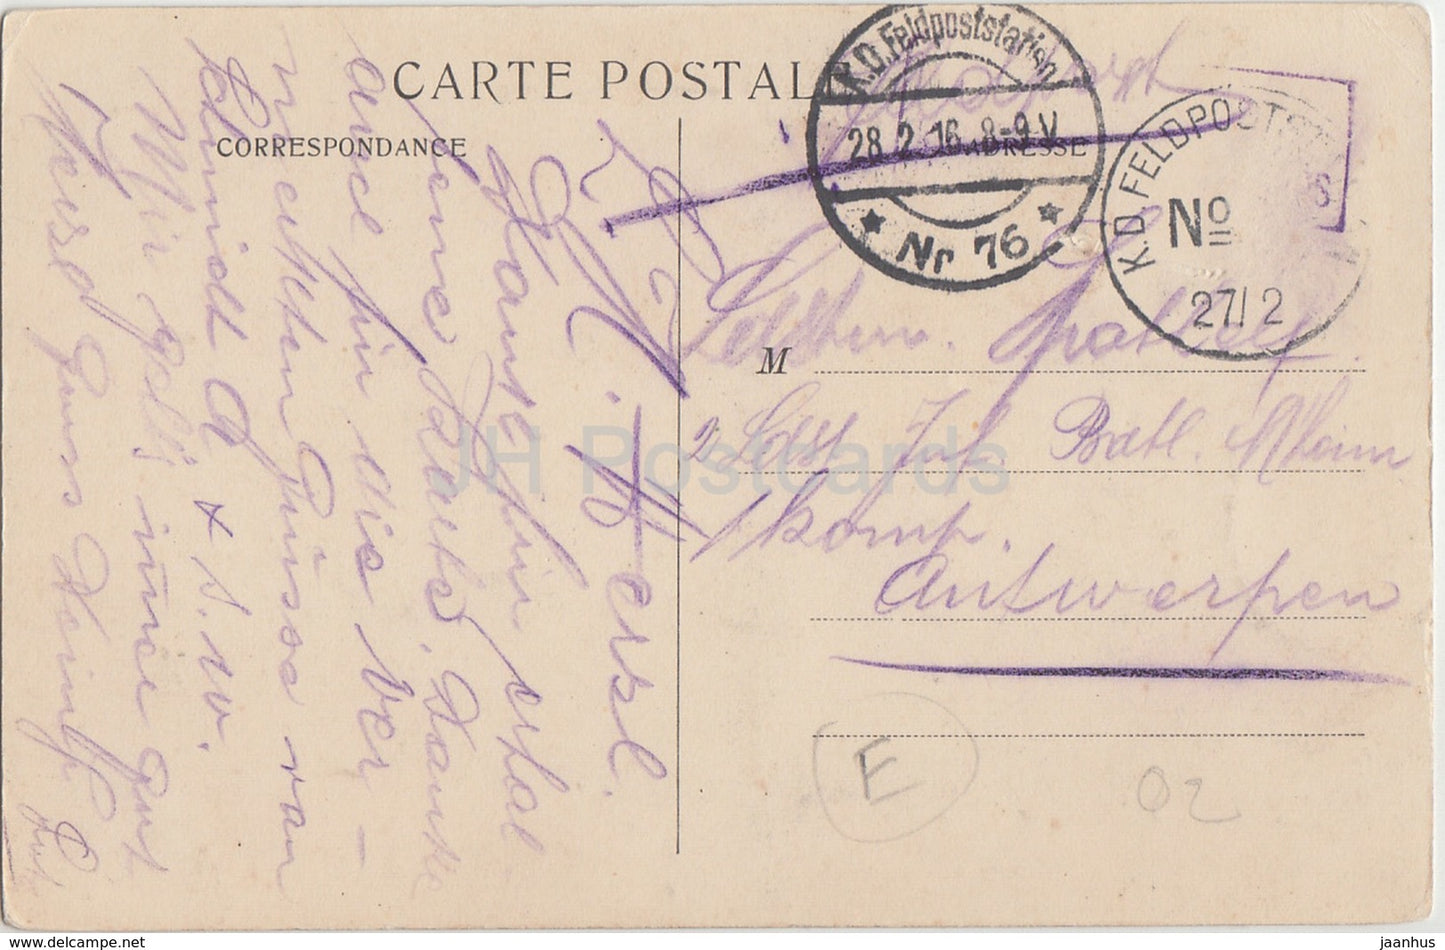 Laon - La Cathedrale - Vue du chevet prise du Palais de Justice - 1916 - Feldpost - old postcard - France - used